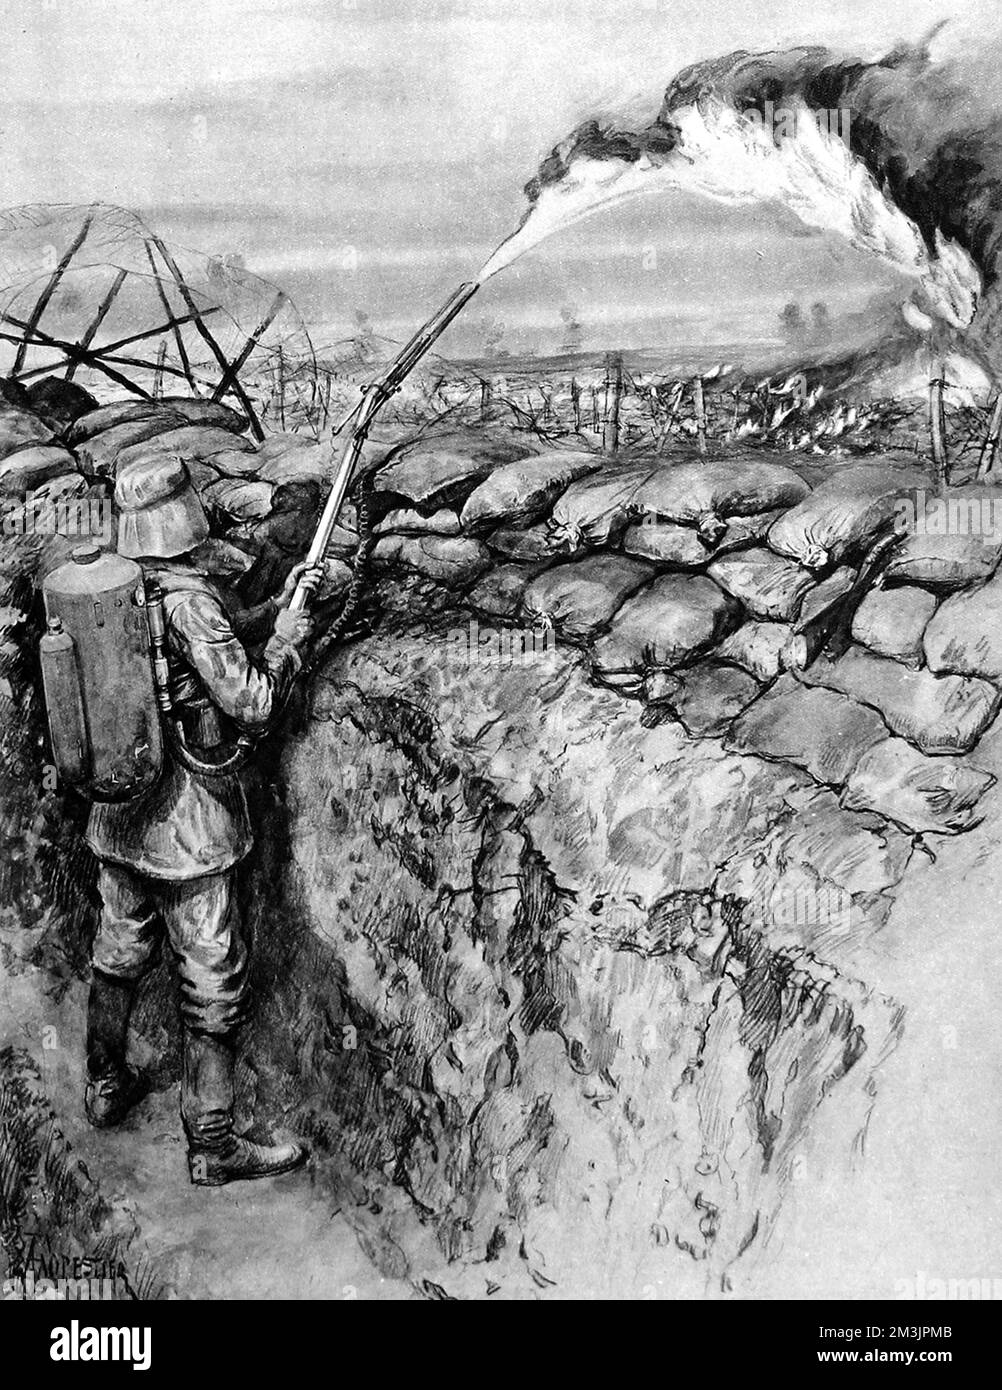 Die Abbildung zeigt einen deutschen Soldaten mit einem „Flammenwerfer“, der im August 1915 in Hooge britische Schützengräben nahm. Das ILN beschreibt dies als „tödliches Instrument“; der Flammenwerfer hatte eine Reichweite von 30 Metern und wurde mit verheerenden Auswirkungen eingesetzt. Datum: August 21. 1915 Stockfoto